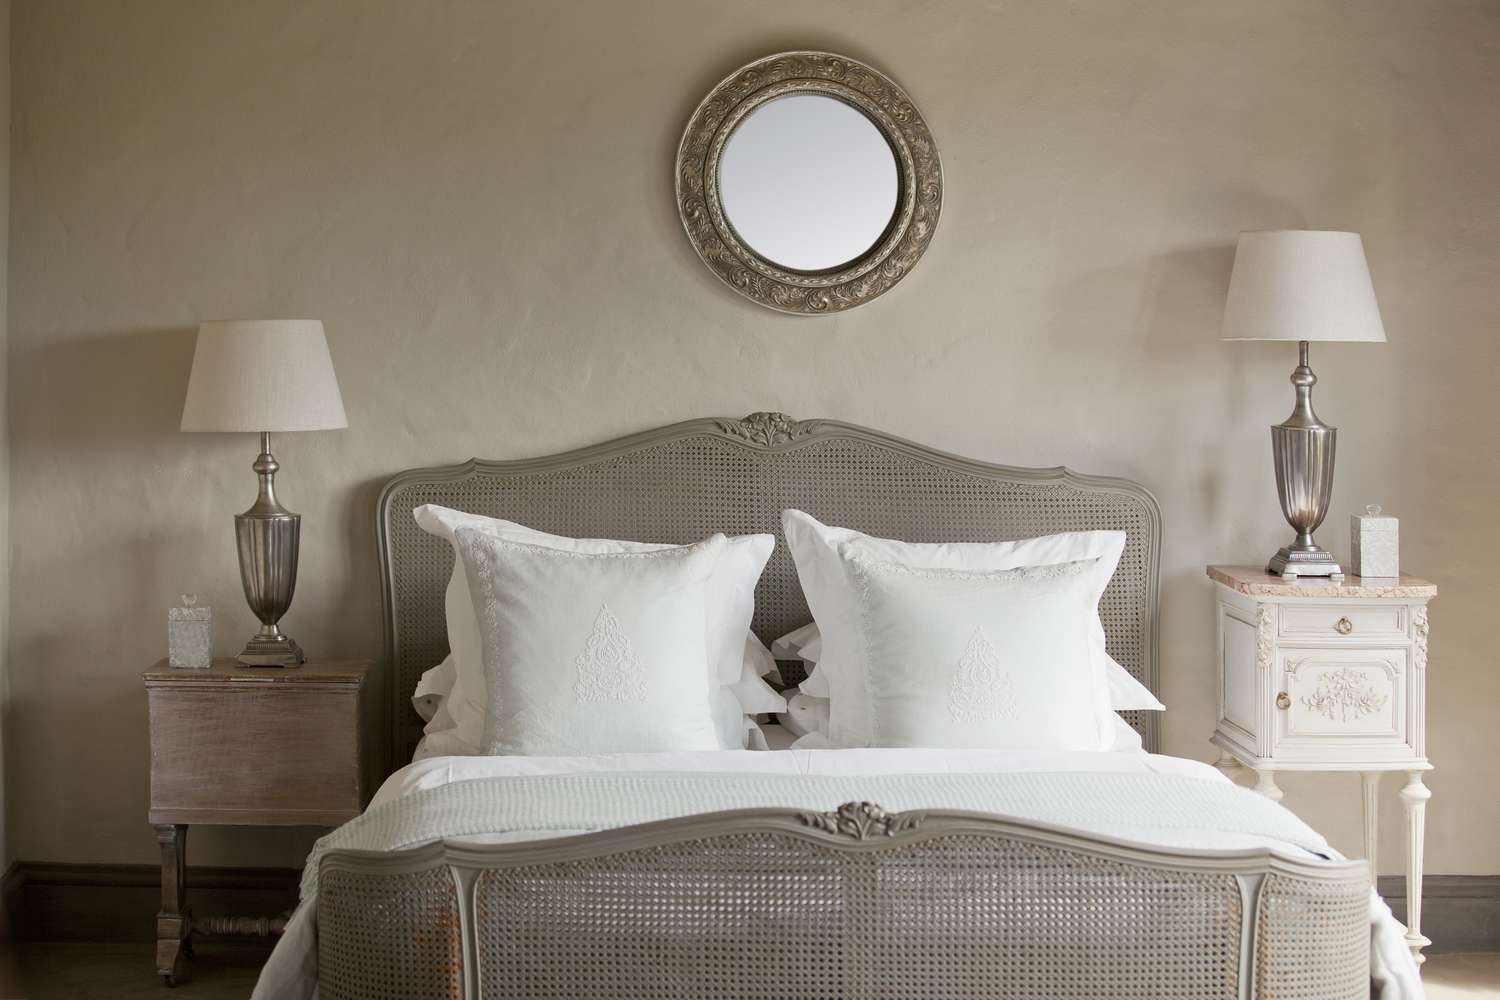 Dormitorio gris con cama, dos mesas auxiliares, dos lámparas y un espejo sobre la cama.